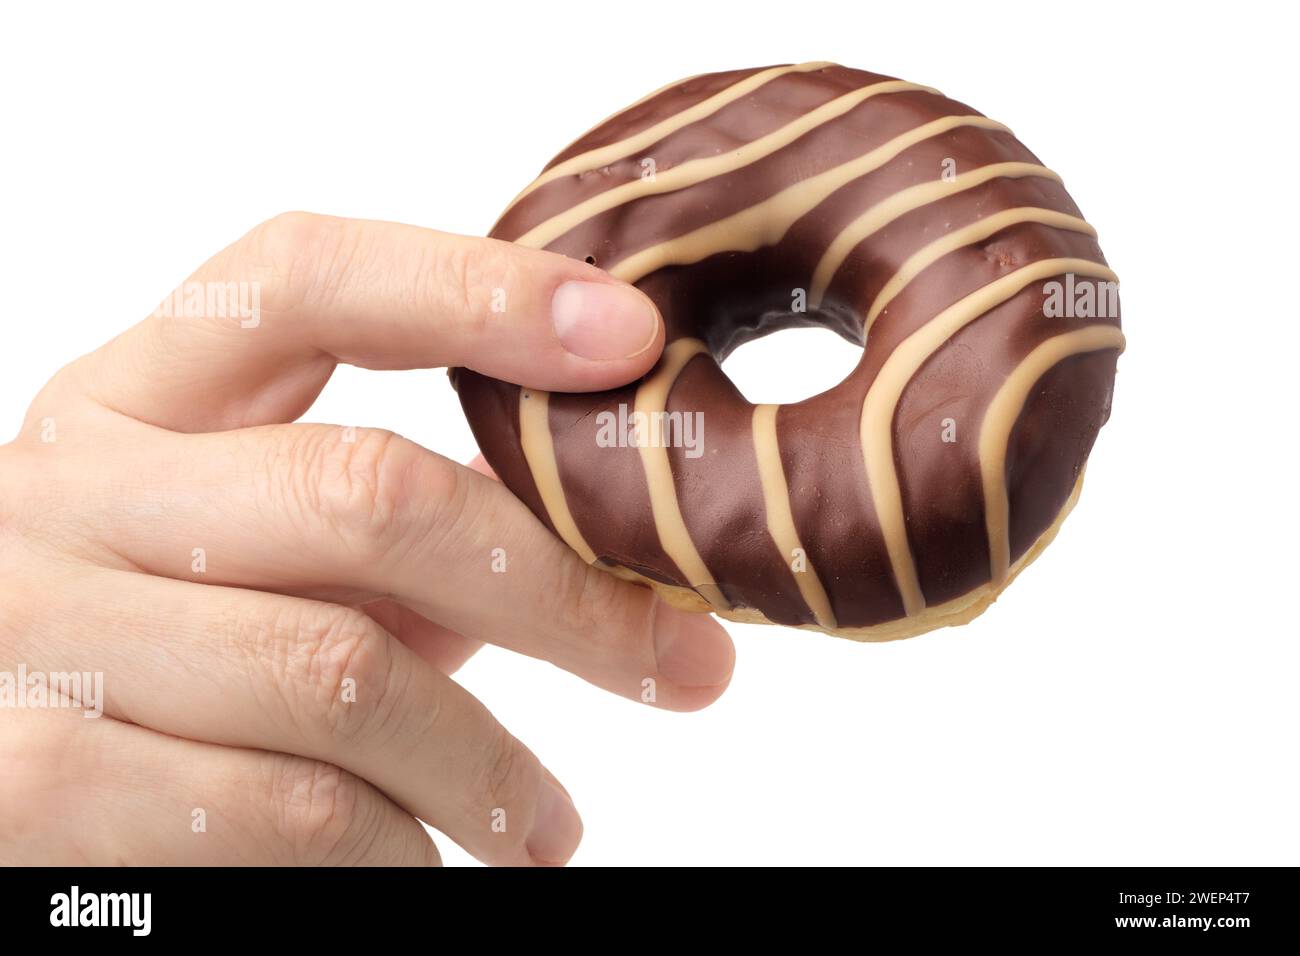 Main humaine tenant le chocolat rayé et le beignet caramel, isolé sur fond blanc Banque D'Images